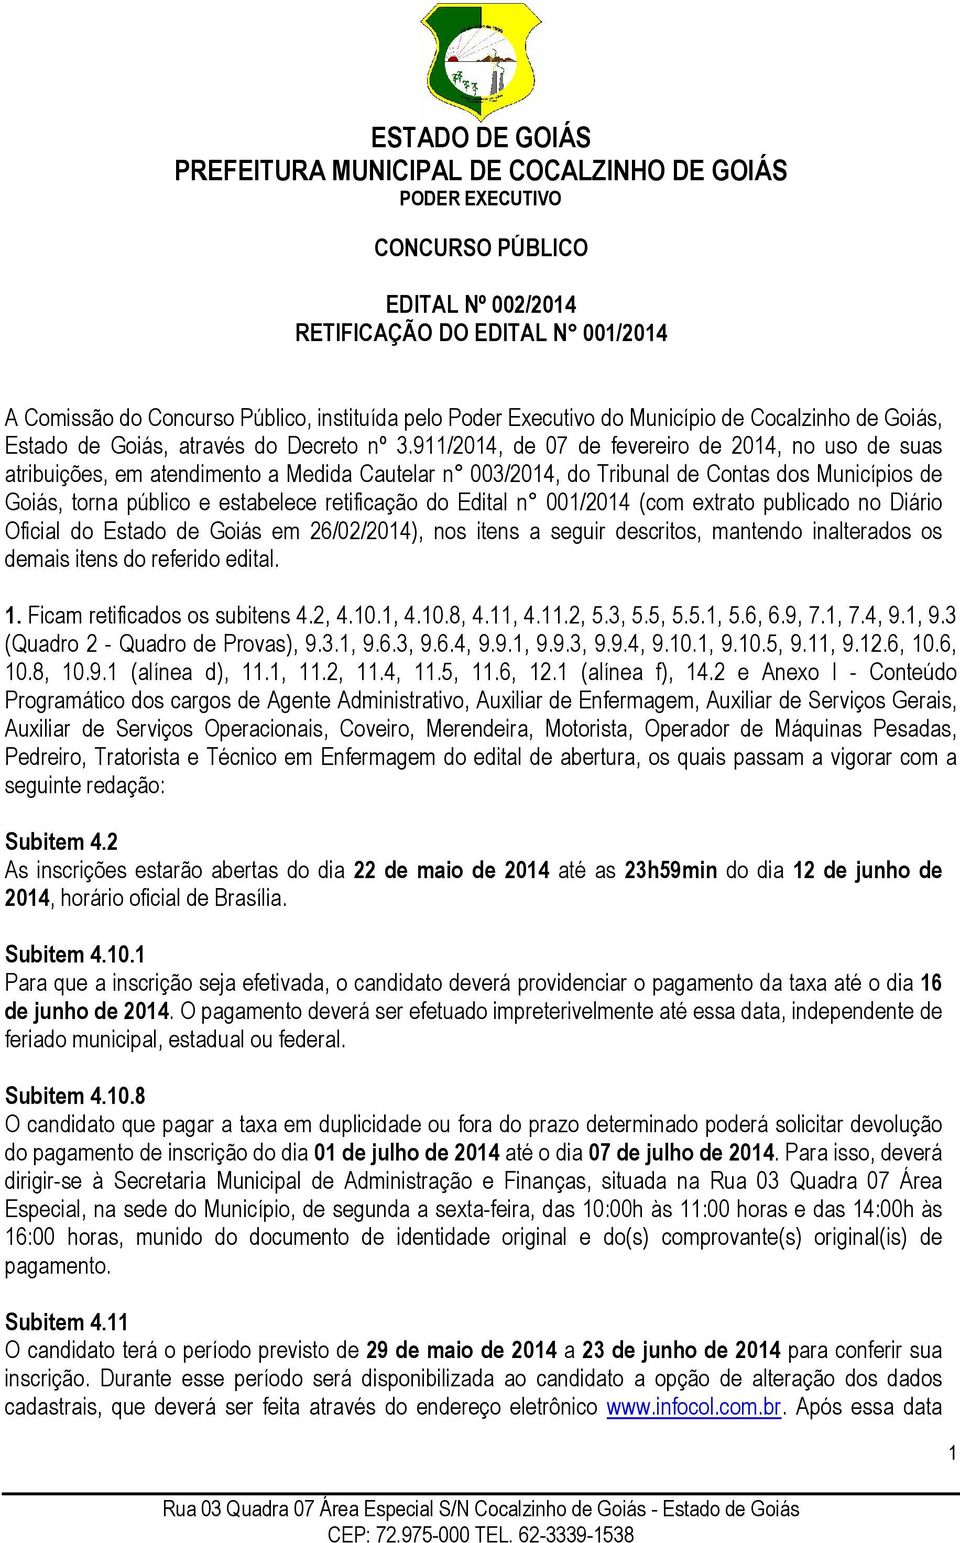 911/2014, de 07 de fevereiro de 2014, no uso de suas atribuições, em atendimento a Medida Cautelar n 003/2014, do Tribunal de Contas dos Municípios de Goiás, torna público e estabelece retificação do